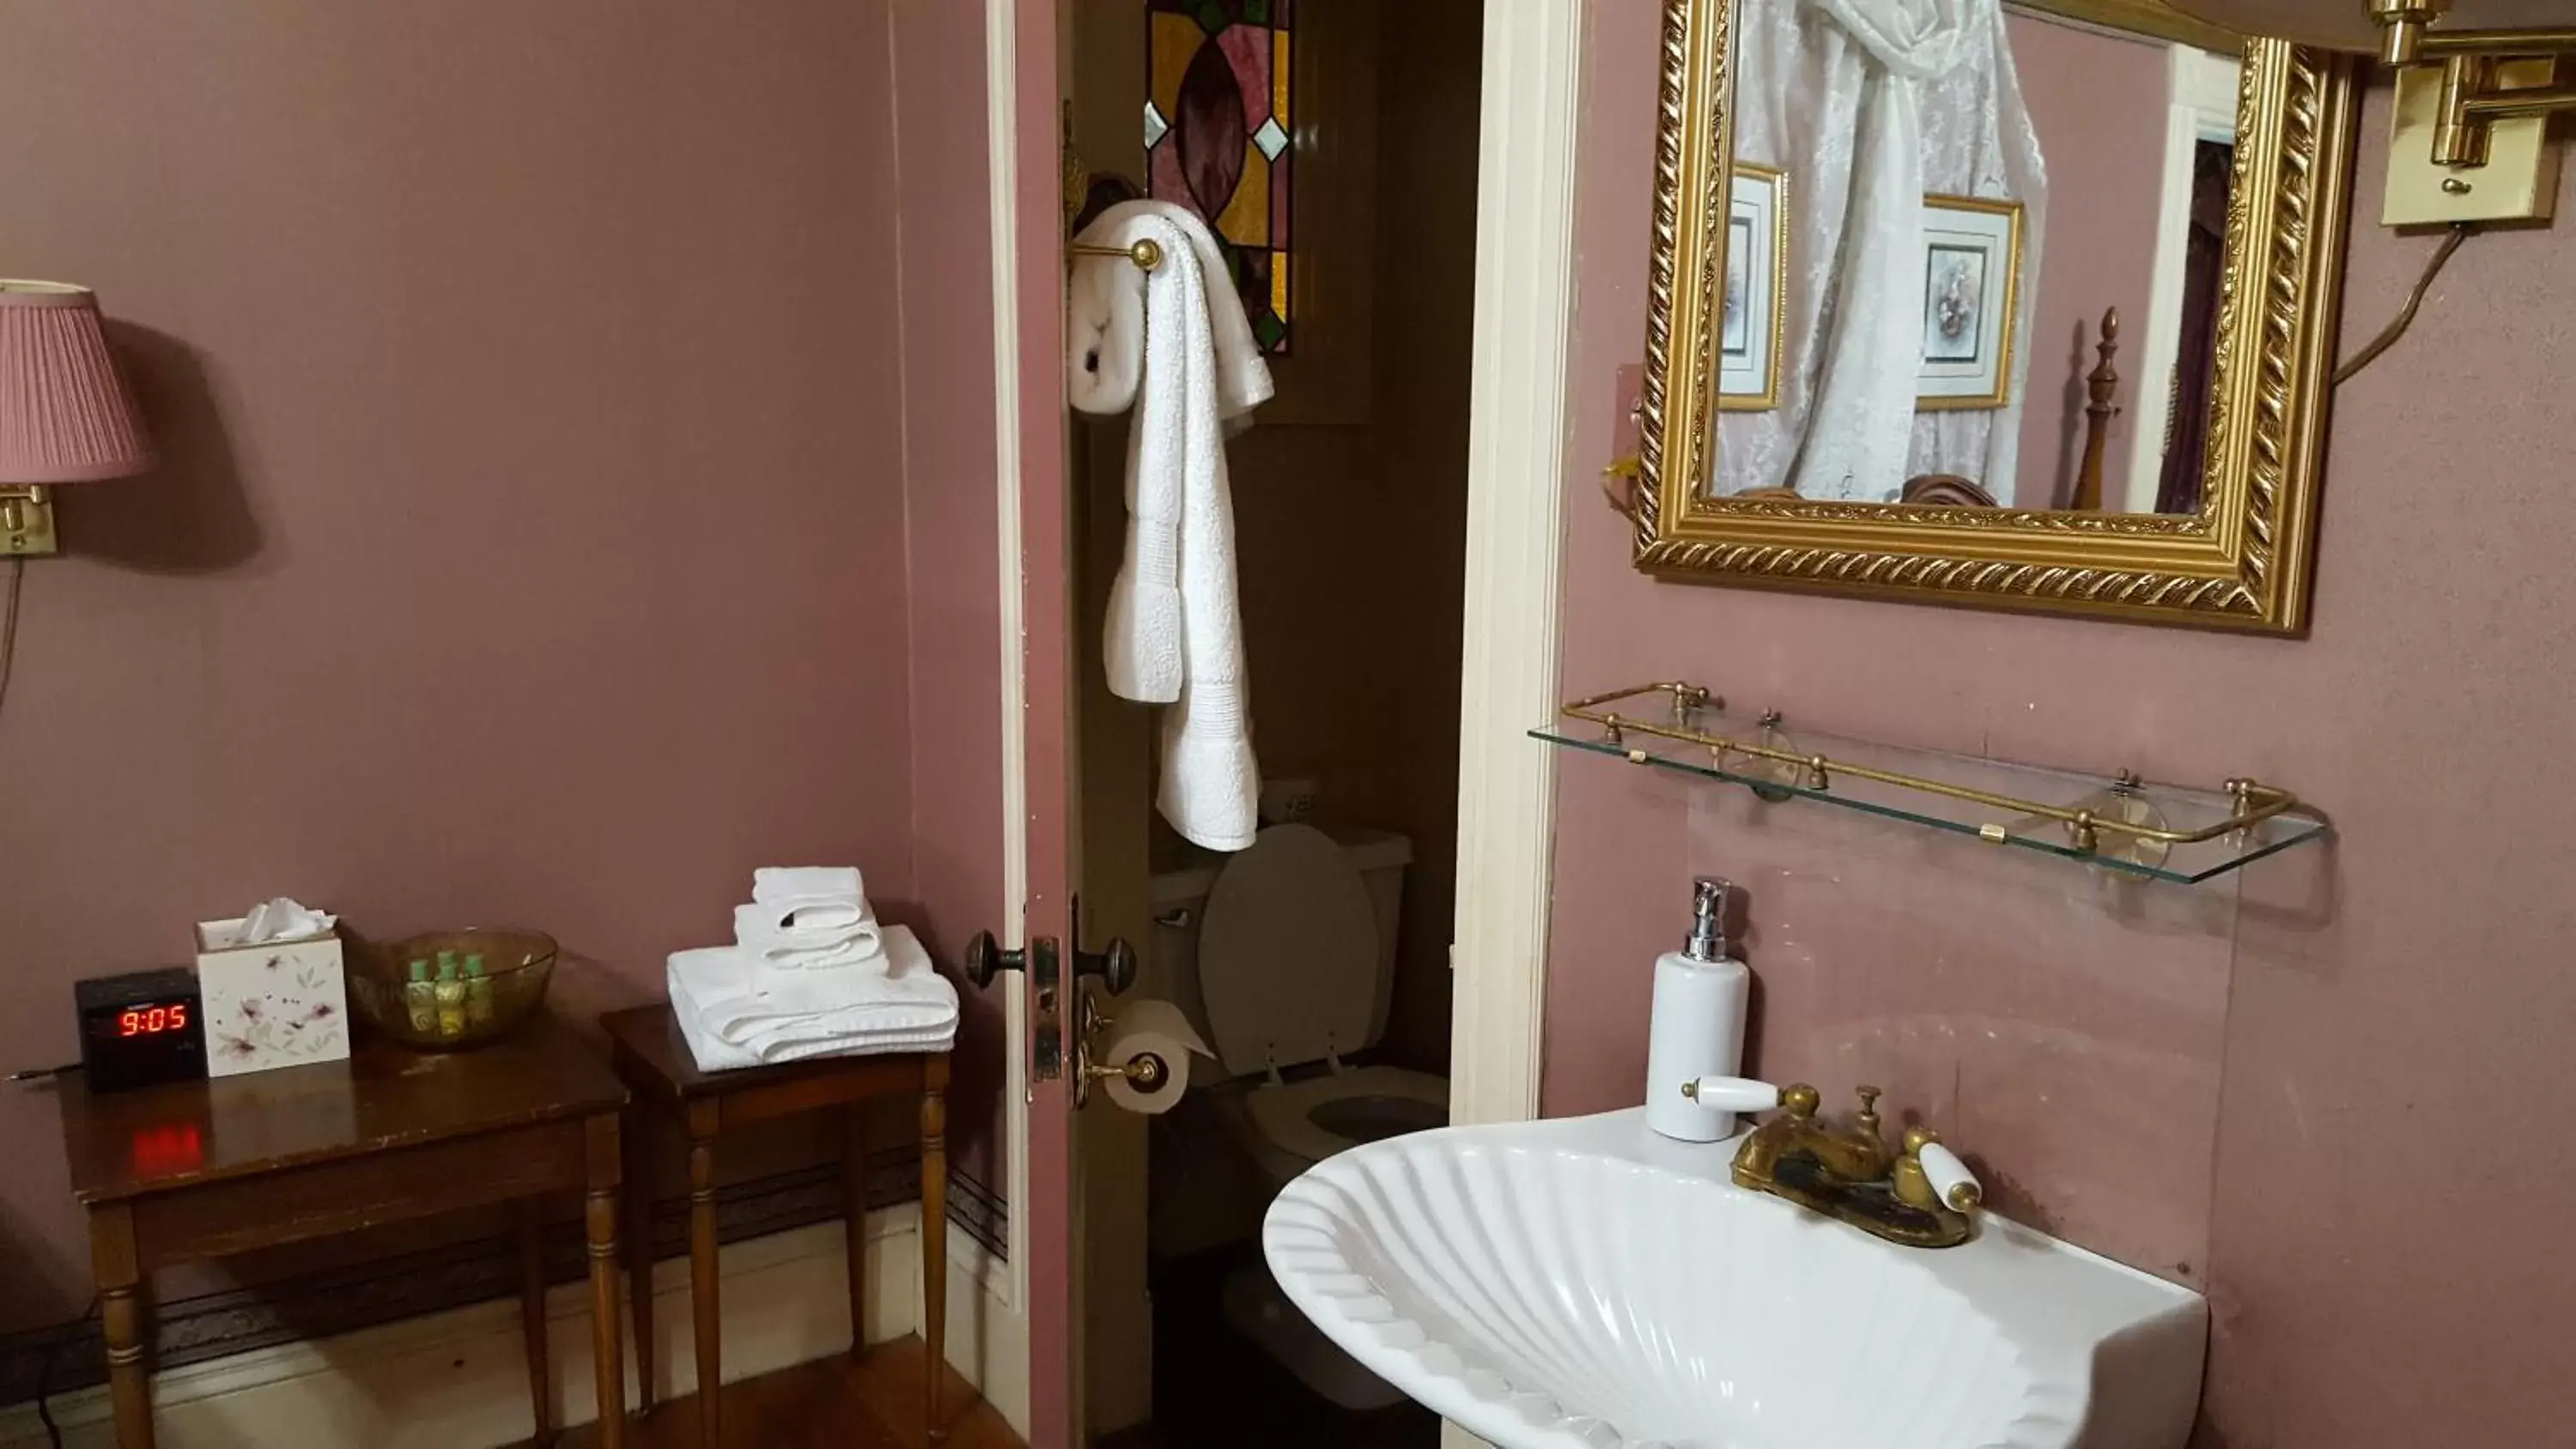 Bathroom in Holidae House Bed & Breakfast